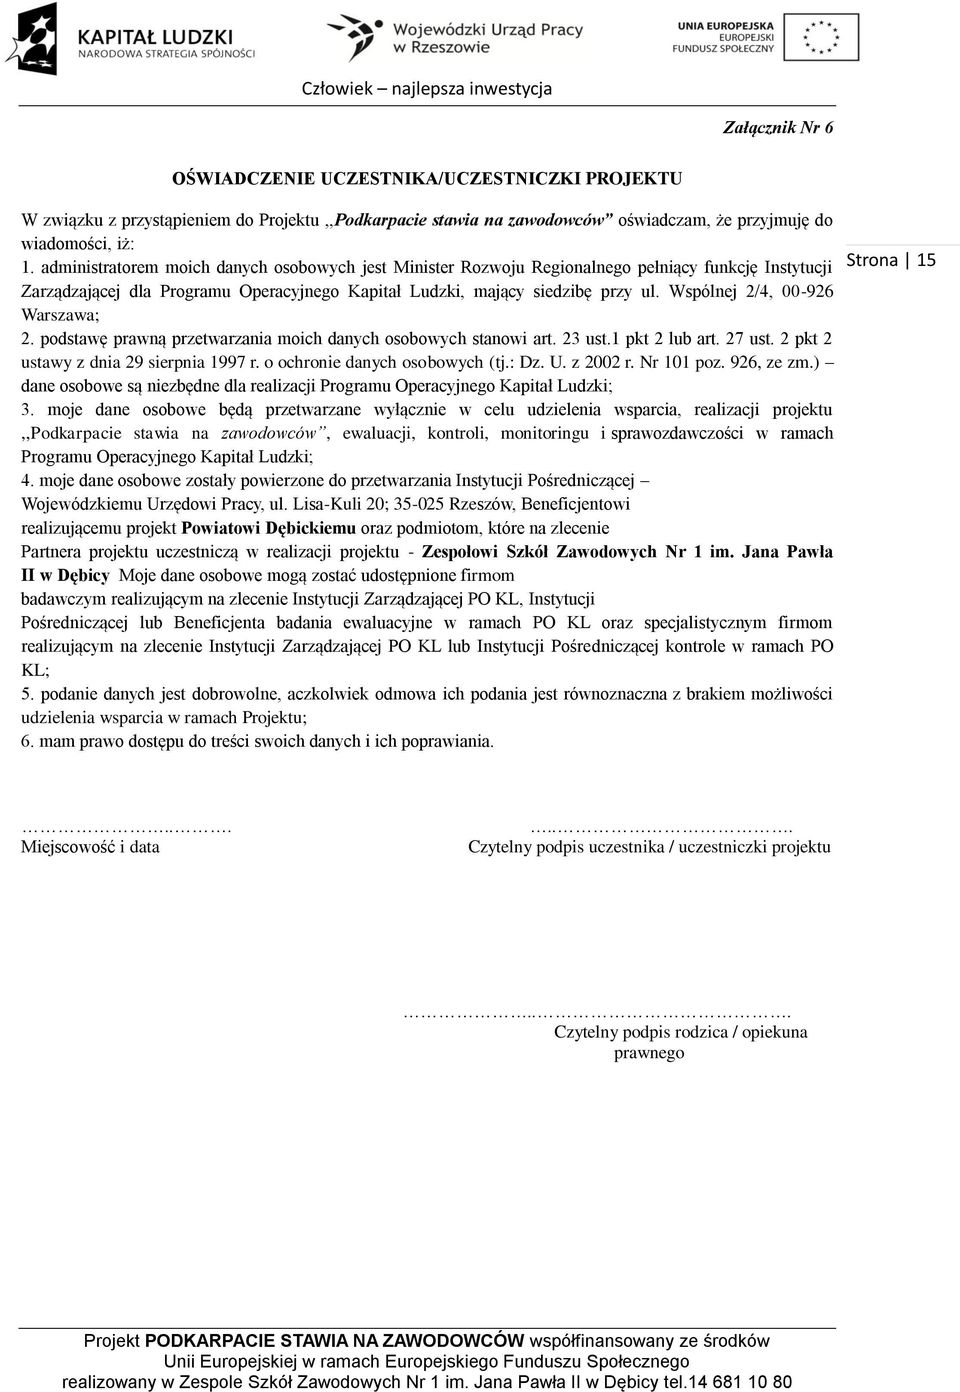 Wspólnej 2/4, 00-926 Warszawa; 2. podstawę prawną przetwarzania moich danych osobowych stanowi art. 23 ust.1 pkt 2 lub art. 27 ust. 2 pkt 2 ustawy z dnia 29 sierpnia 1997 r.